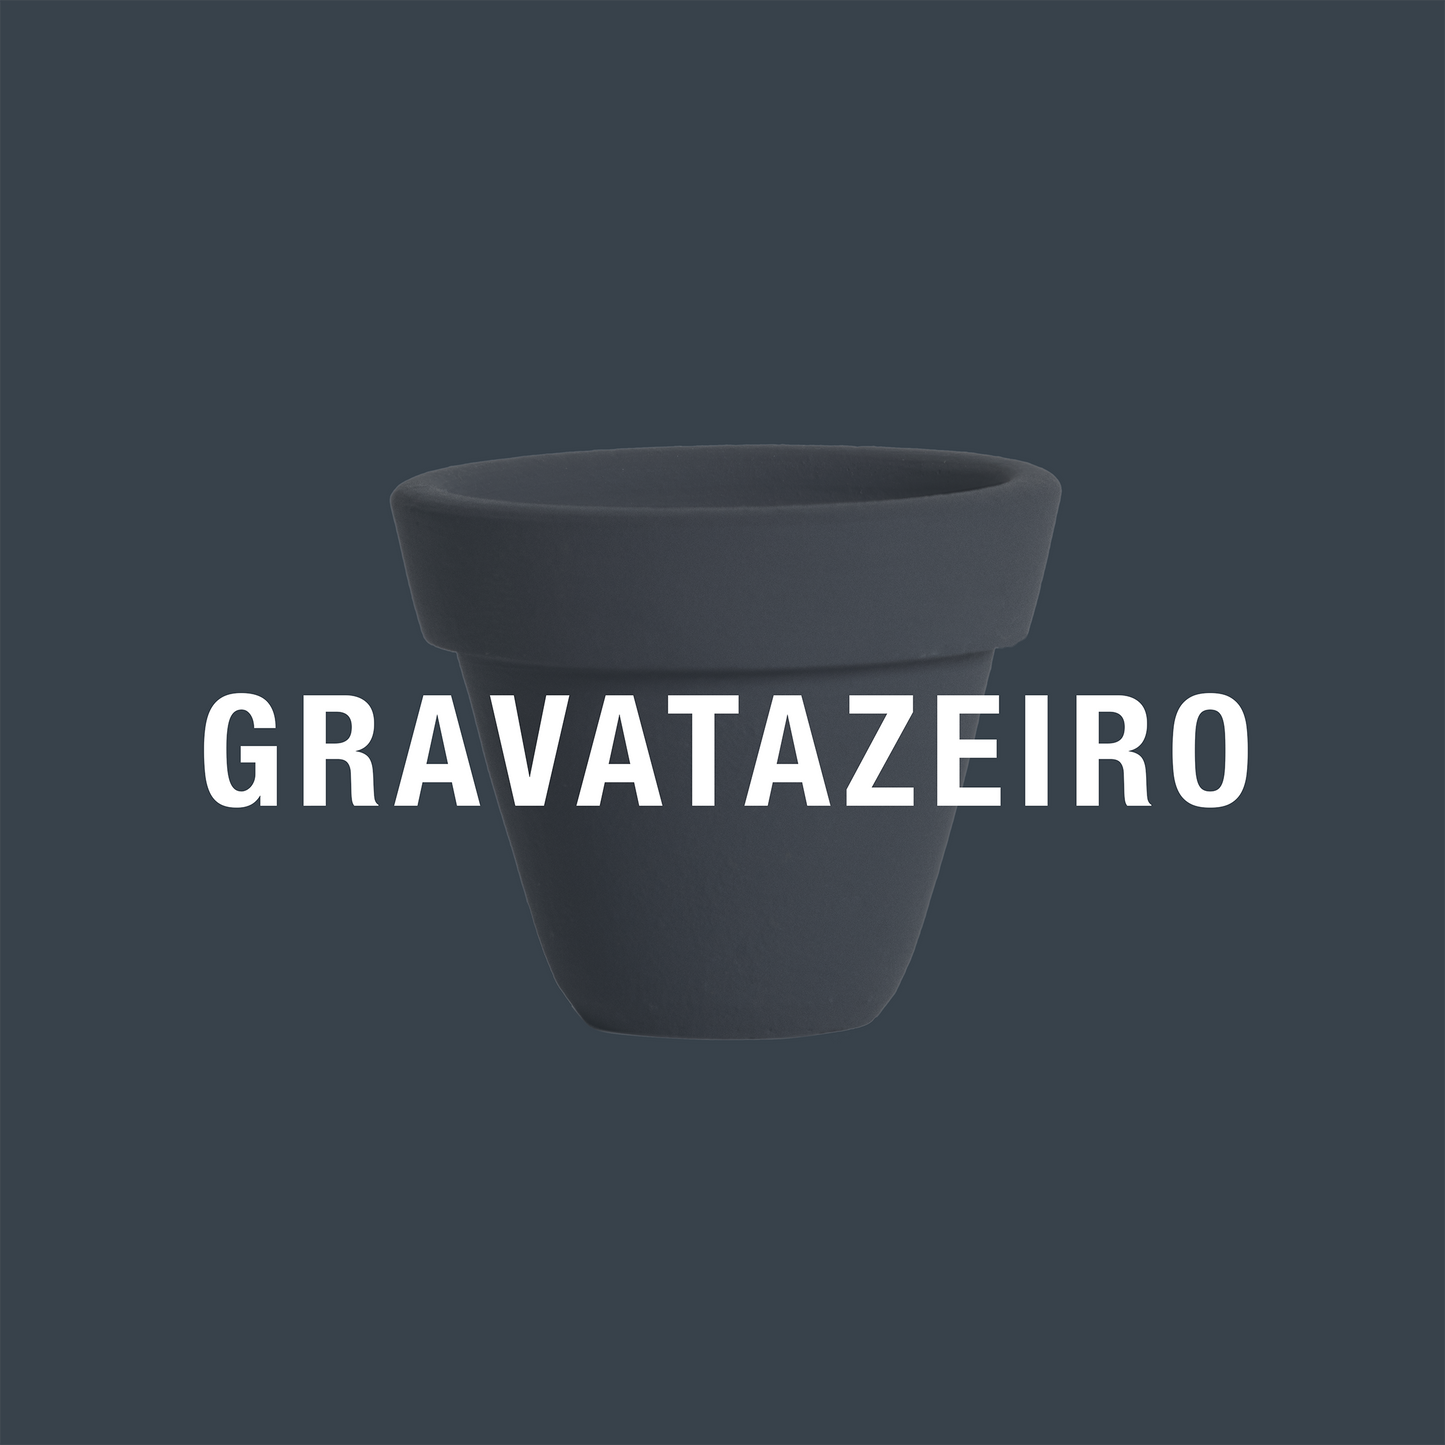 Gravatazeiro